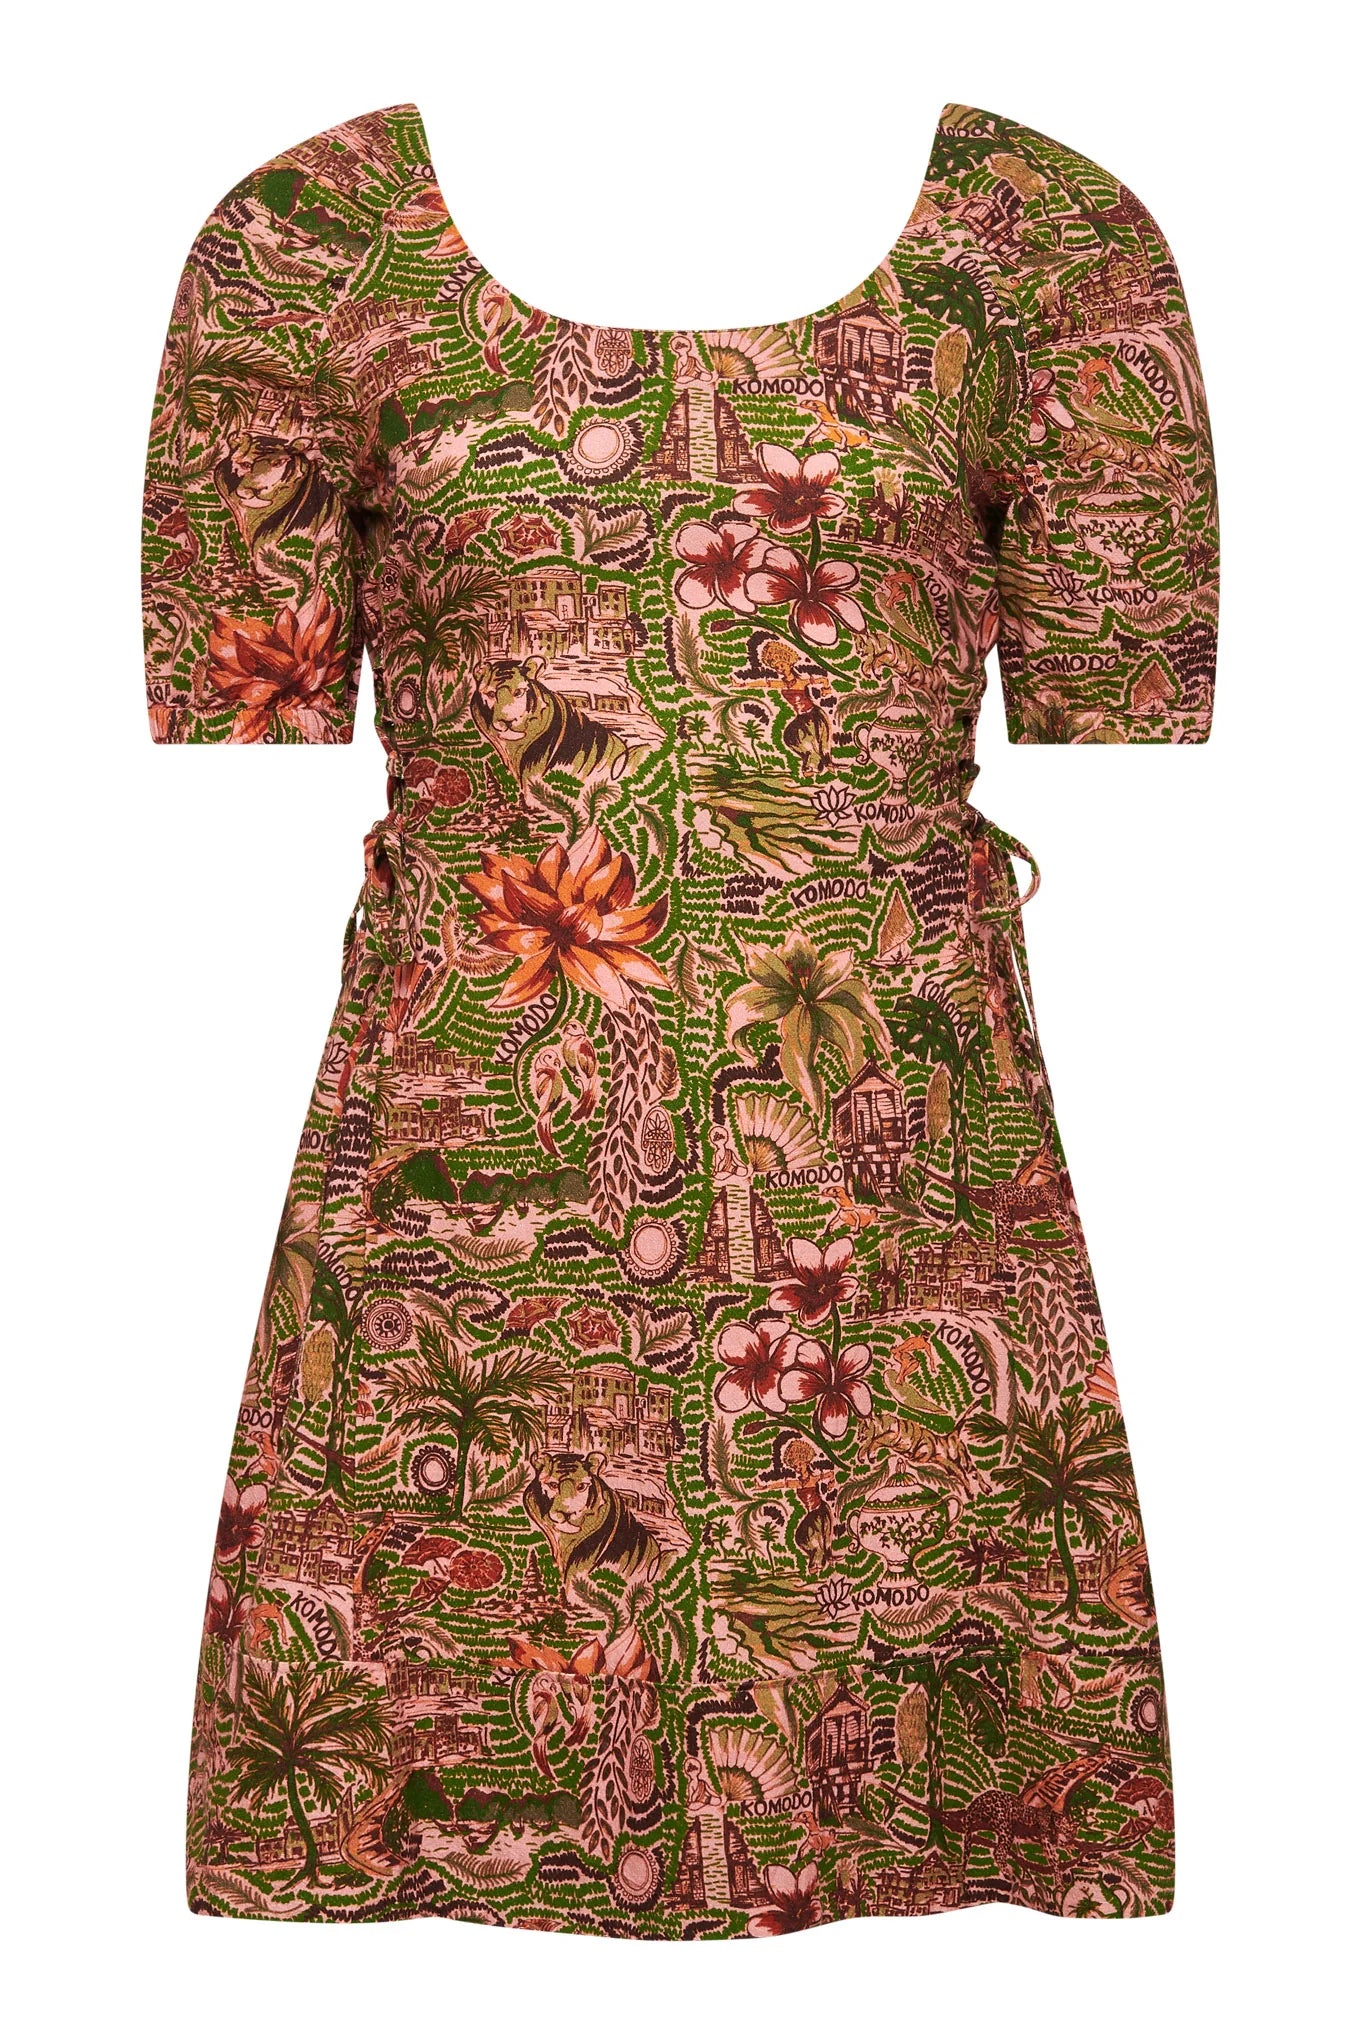 Komodo Bali Tropical Print Organic Cotton Dress Pink